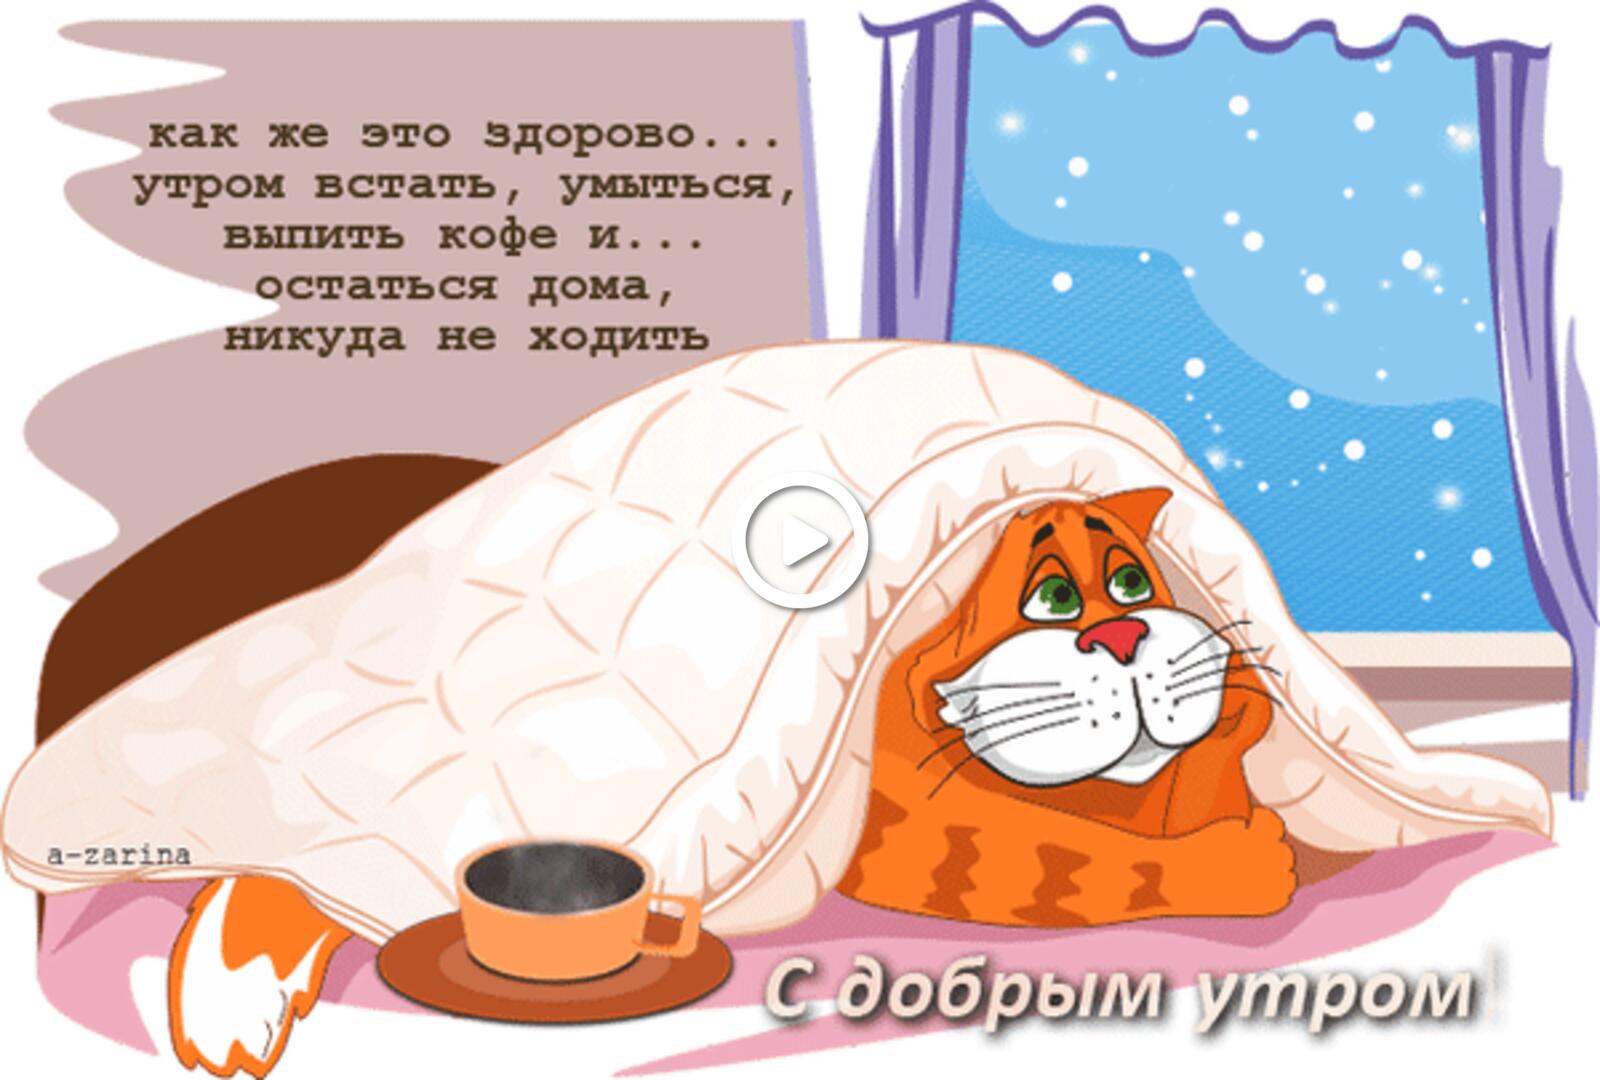 一张以早上好 猫 毯子为主题的明信片